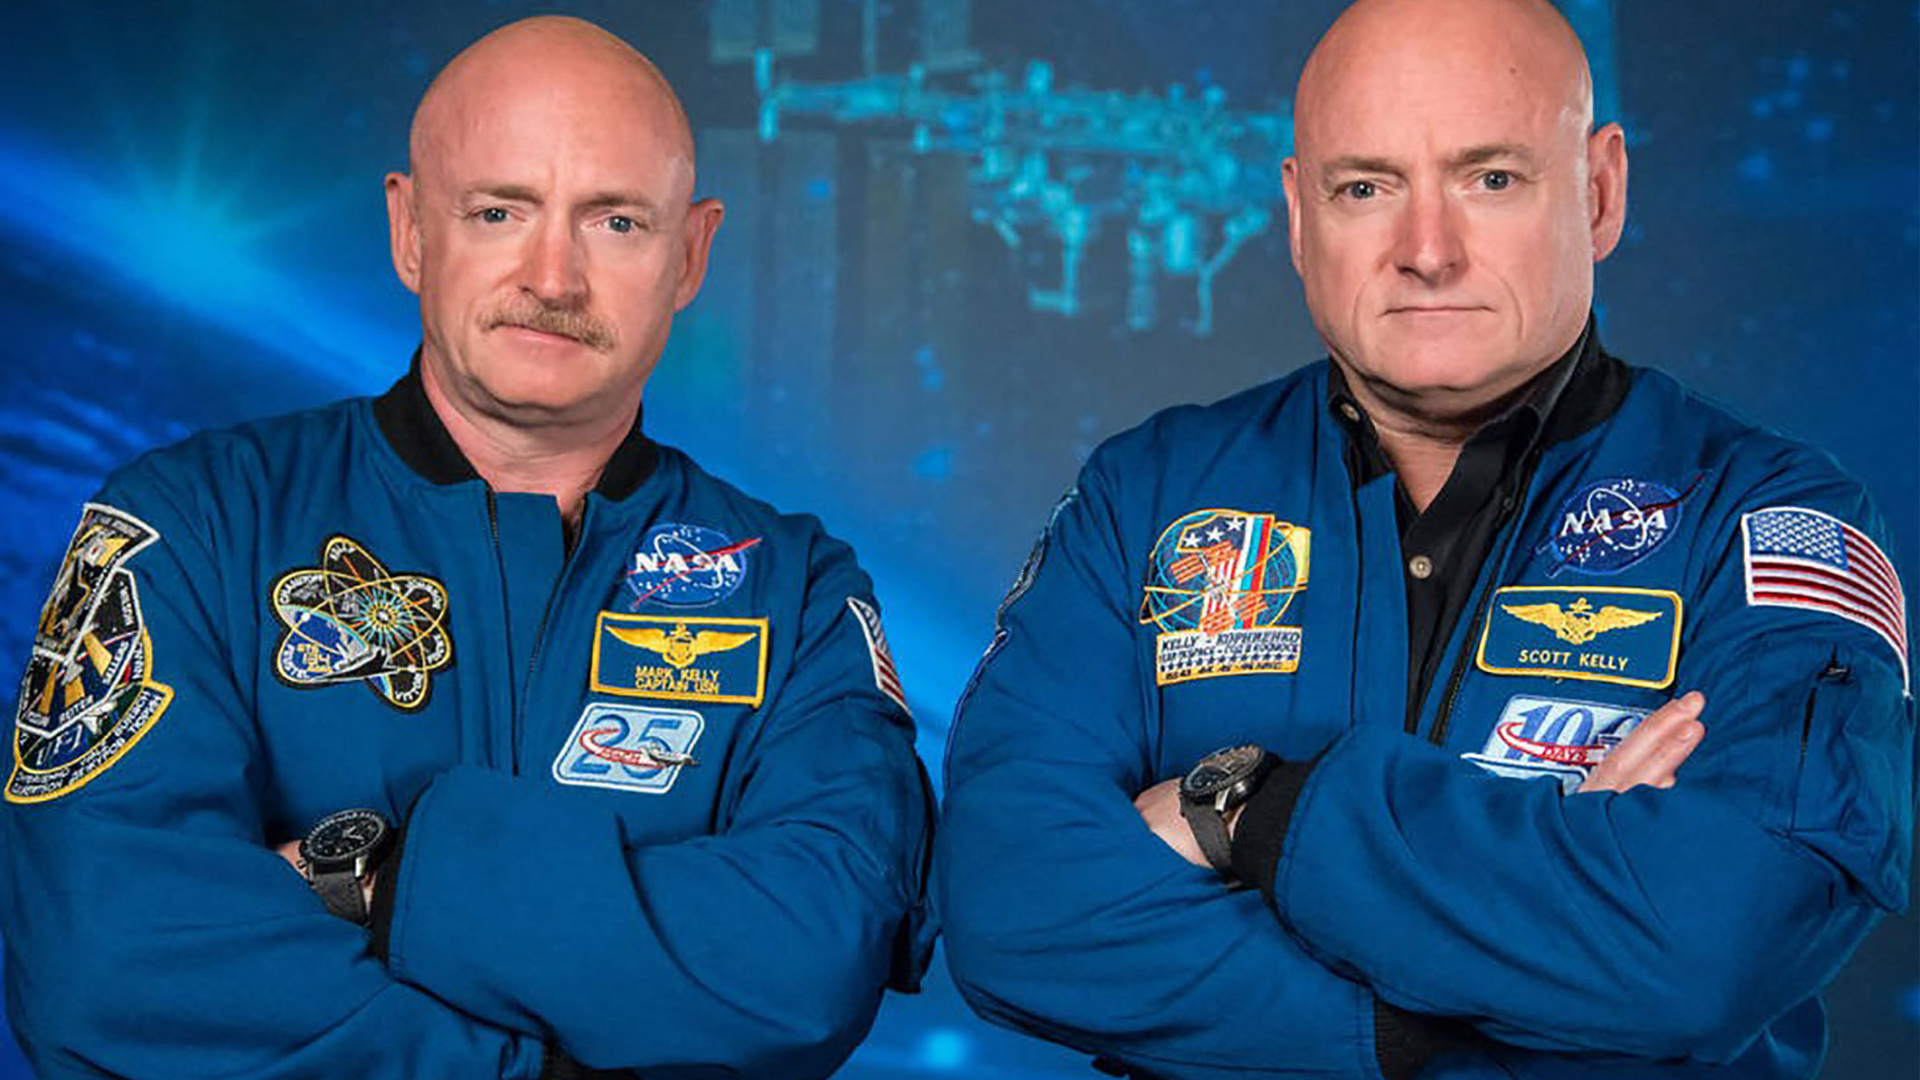 El misterio del gemelo que 'rejuveneció' en el espacio